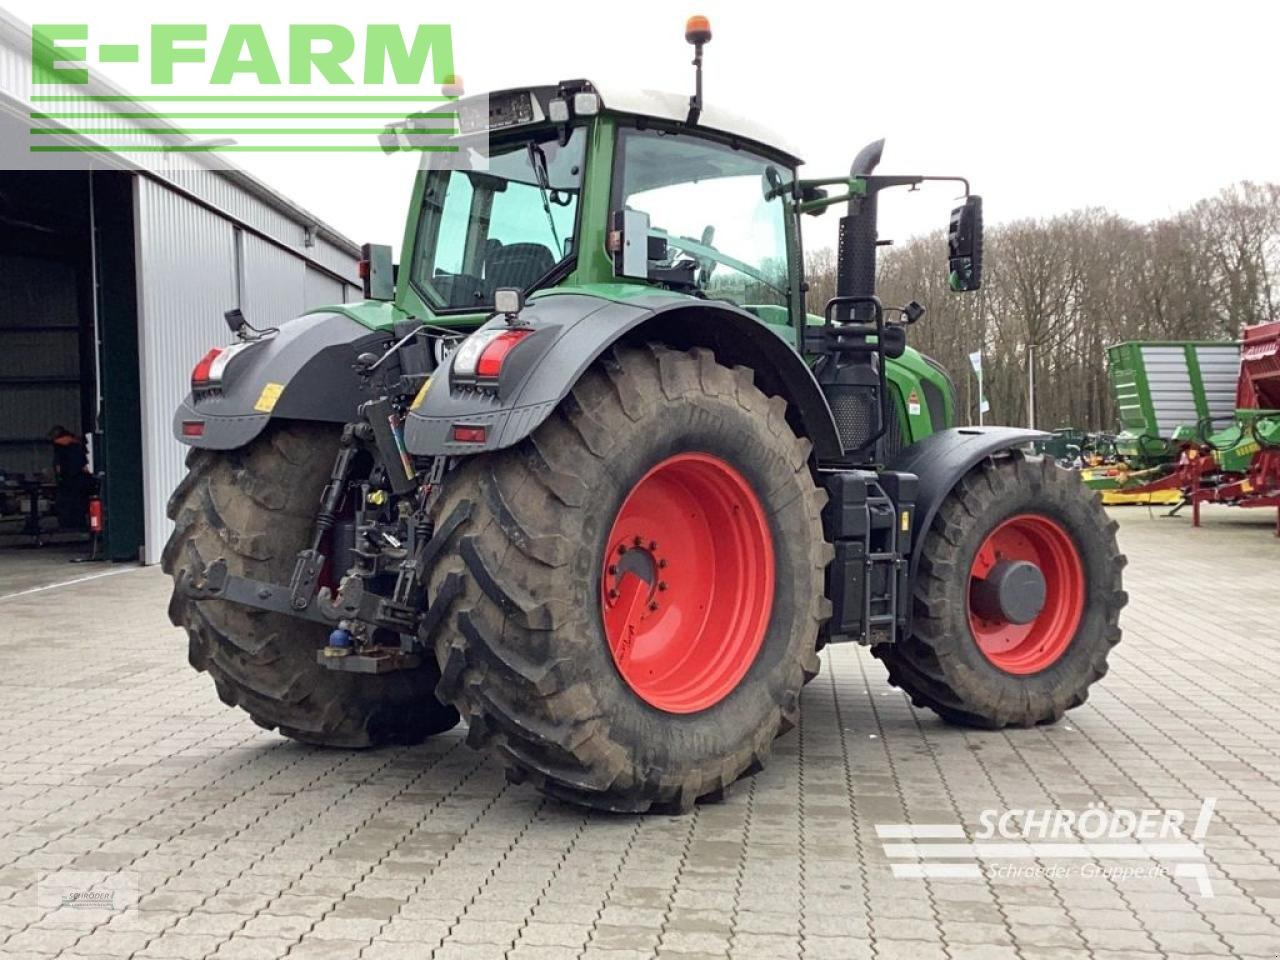 Tractor agricol Fendt 933 vario s4 profi plus: Foto 3